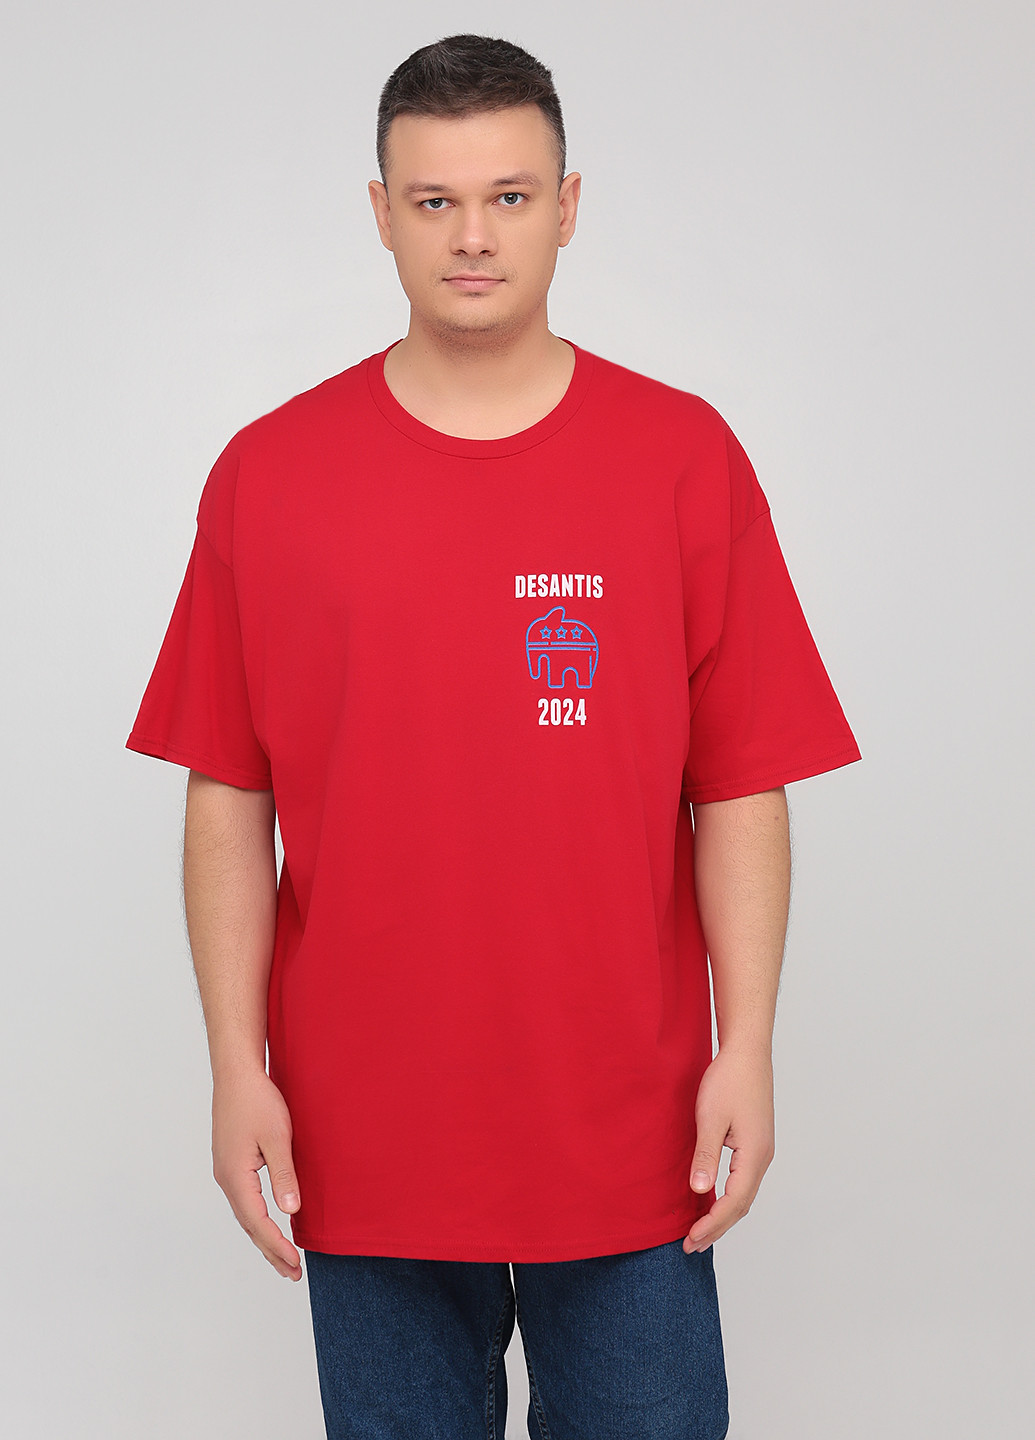 Червона літня футболка Hanes